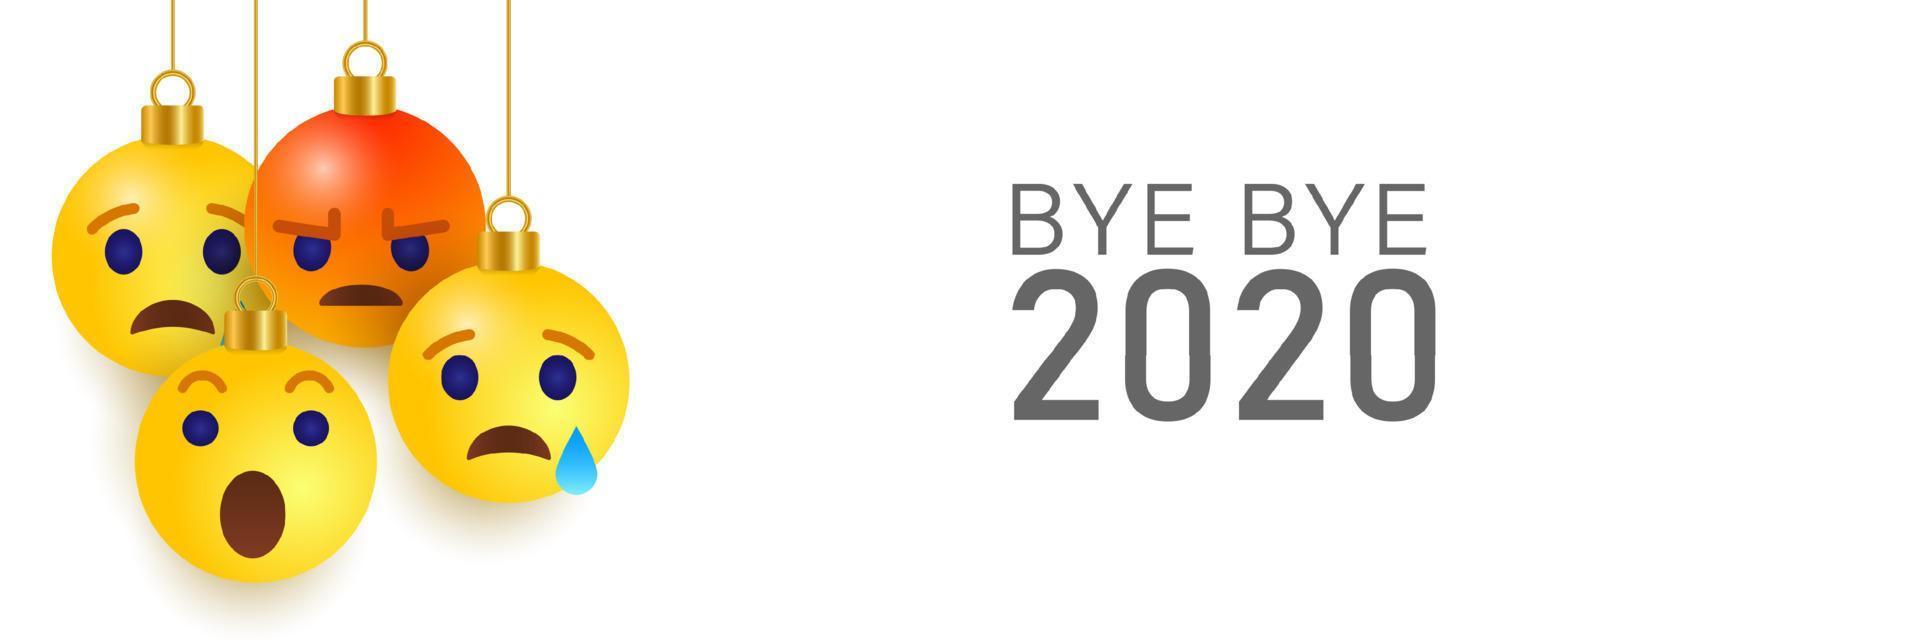 adeus 2020 emoji triste e zangado. vamos sentir sua falta não. ilustração vetorial em fundo branco vetor